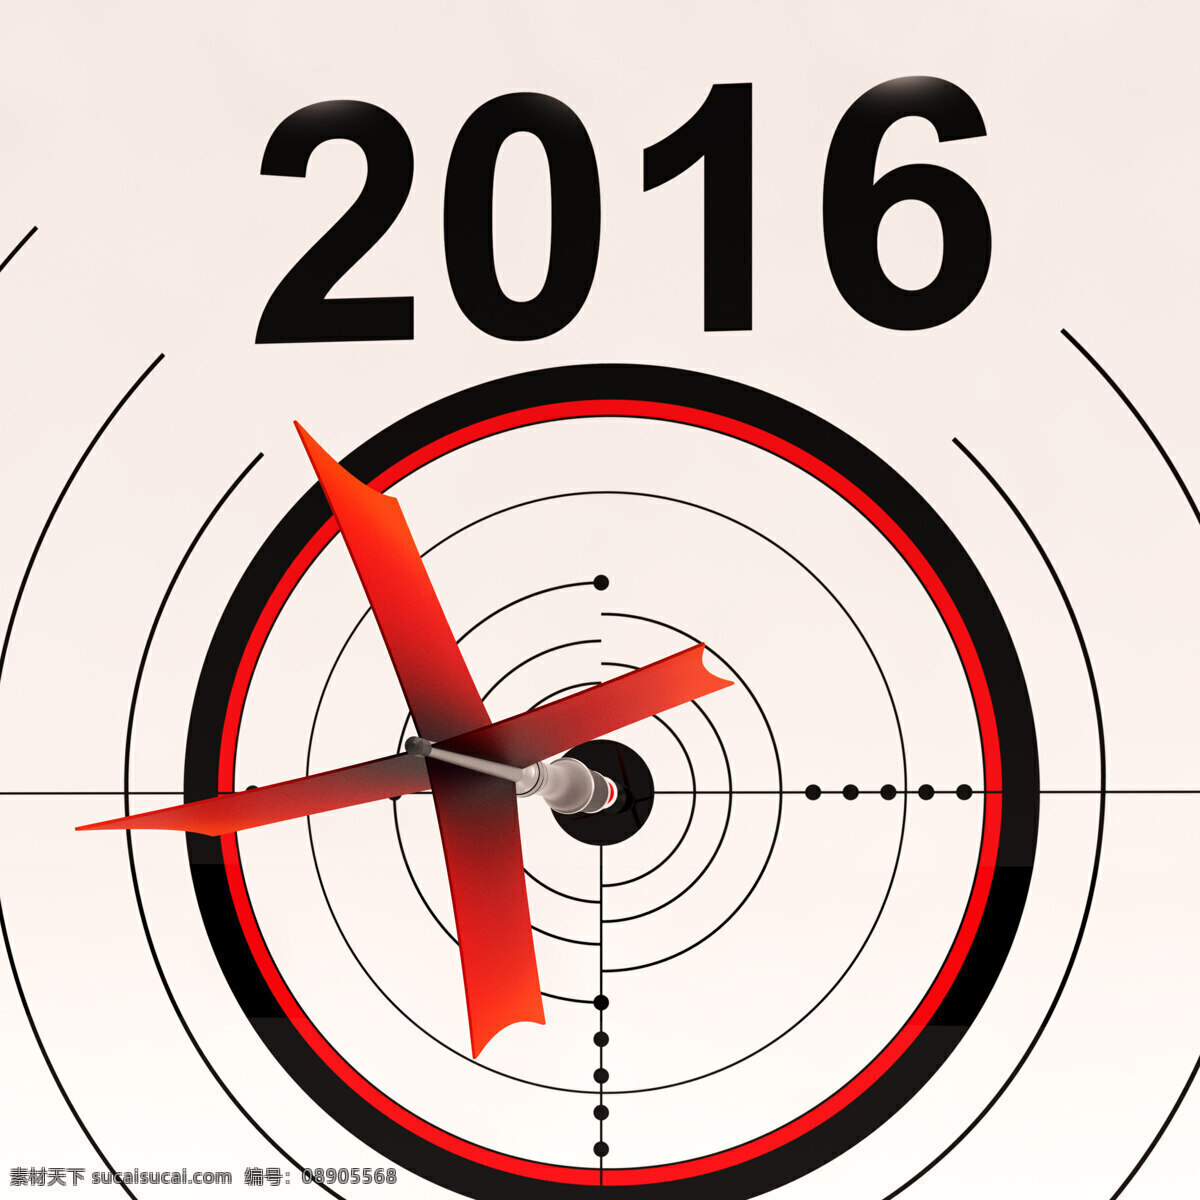 2016 日历 意味着 规划 年度 日程安排 白色